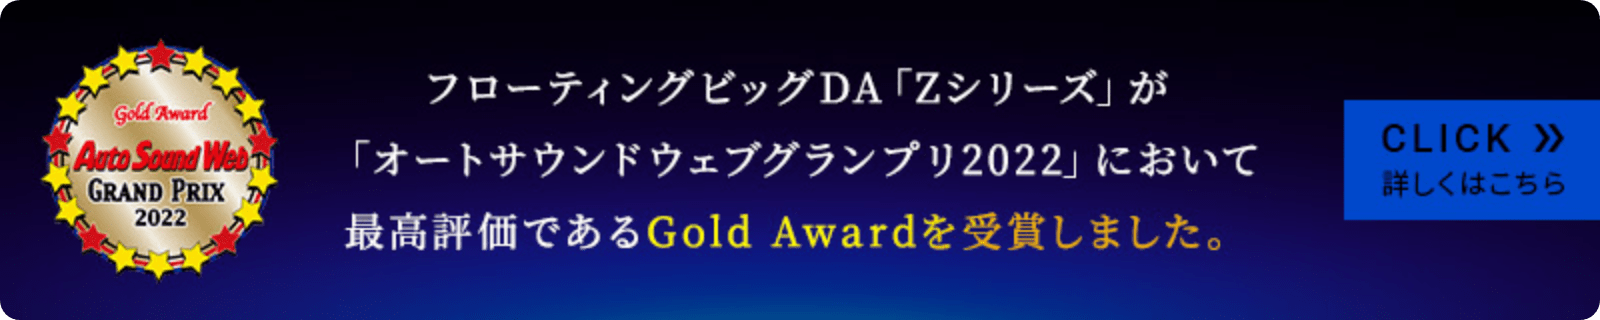 フローティングビッグDA「Zシリーズ」が「オートサウンドウェブグランプリ2022」において最高評価であるGold Awardを受賞しました。